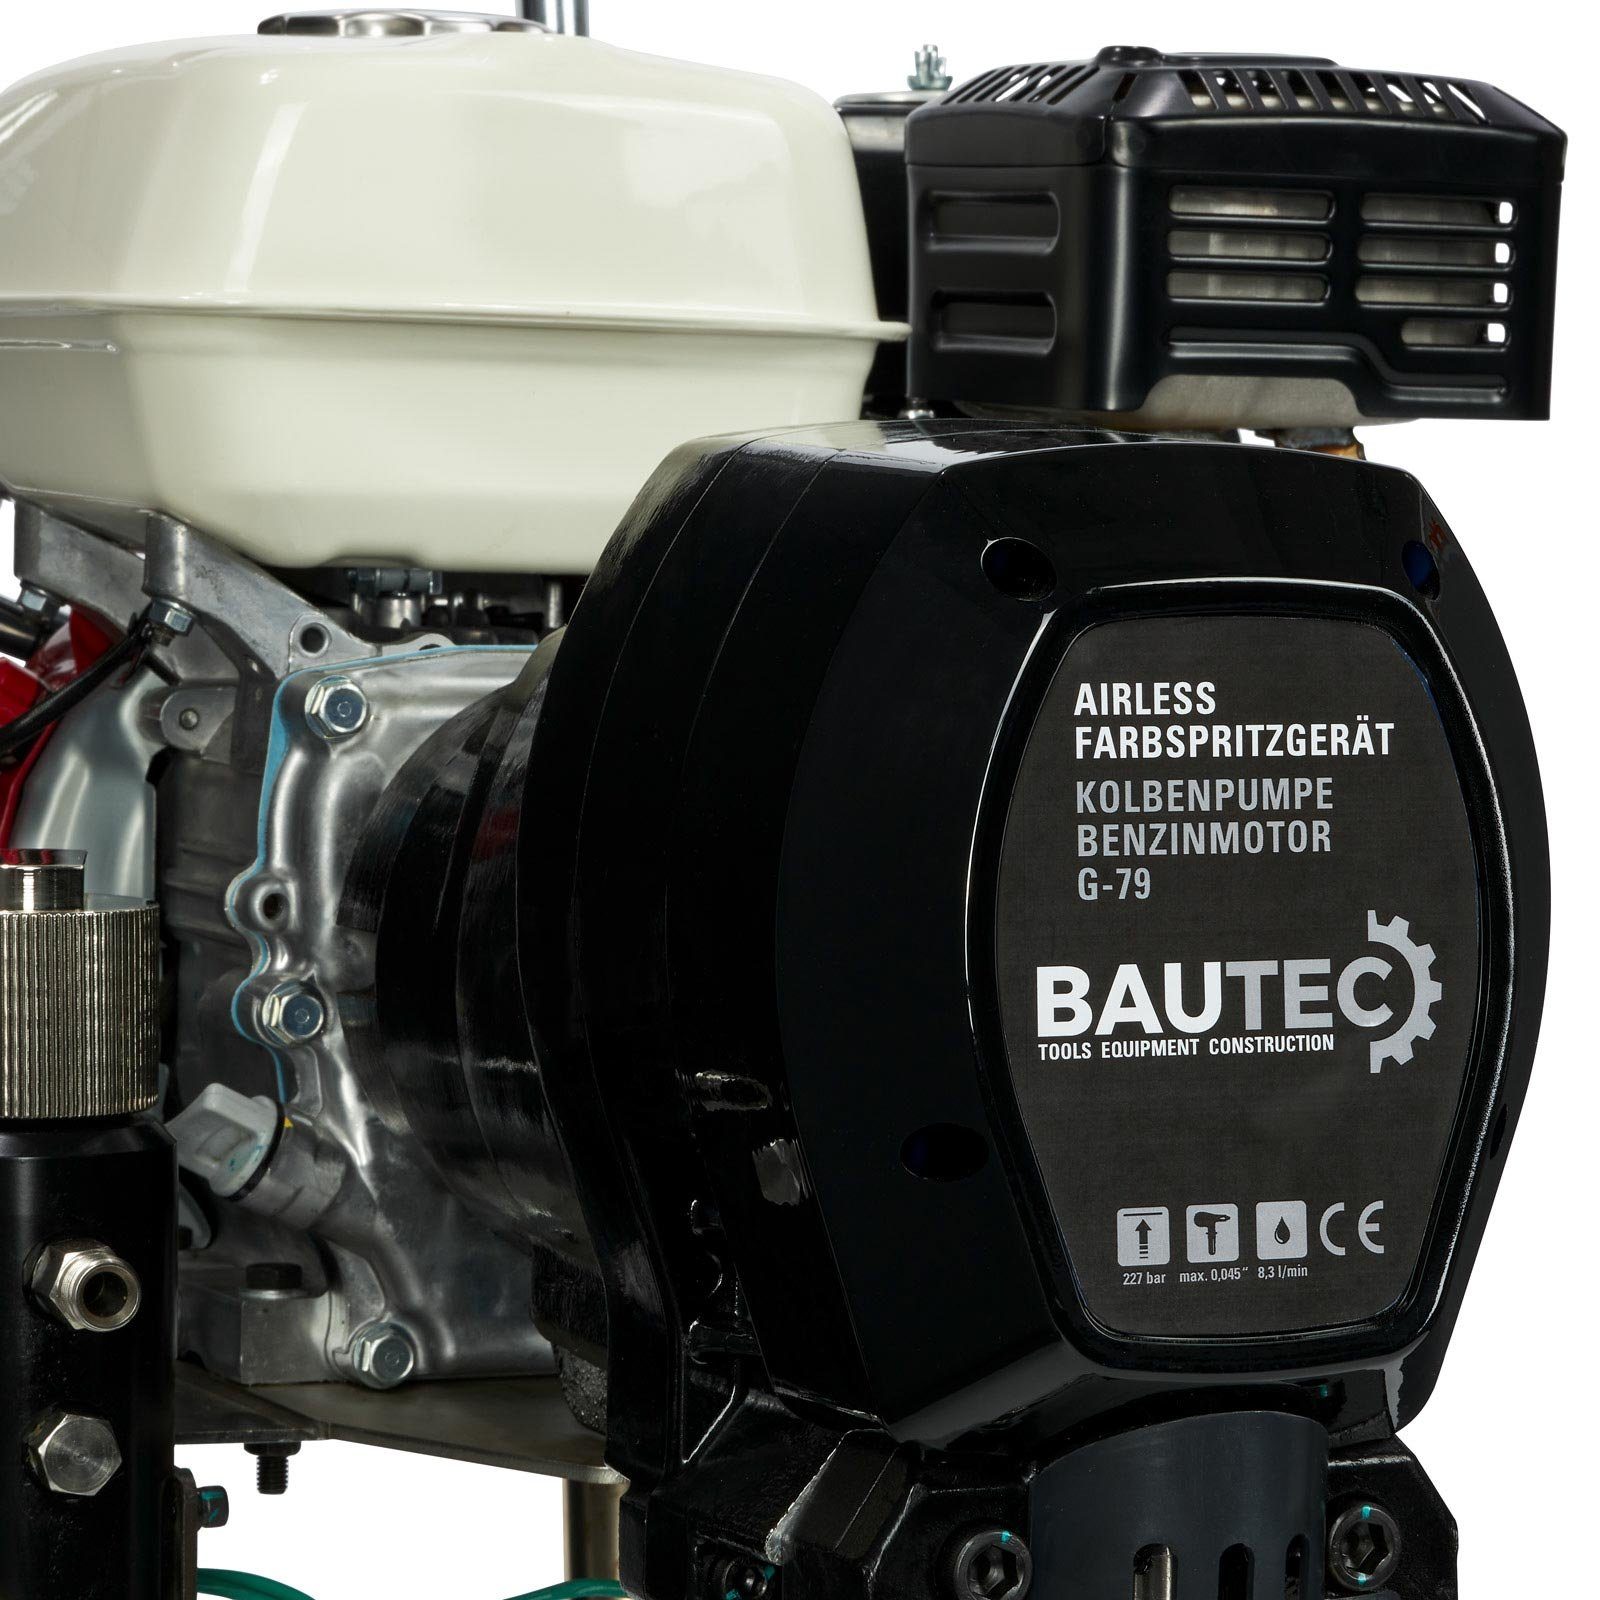 BAUTEC Farbsprühgerät Airless benzinbetr. l/min, Kolbenpumpe mit 8,3 Farbspritzsystem (Komplett-Set) G-79 »